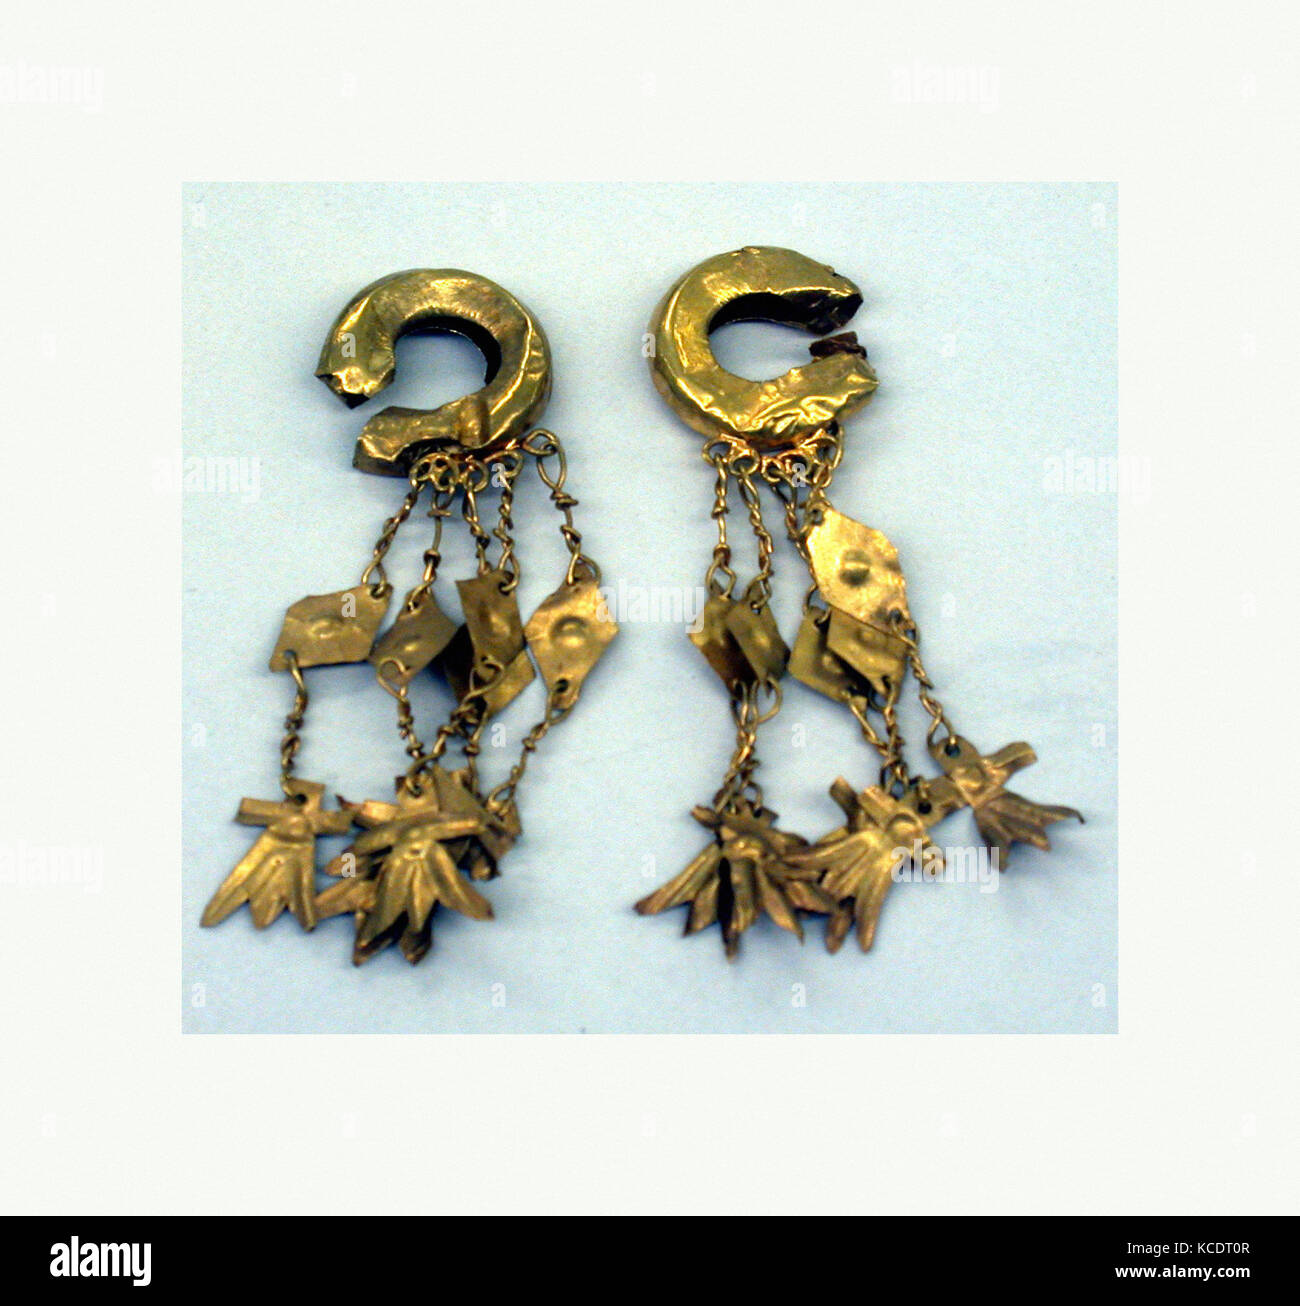 Orecchio, ornamento del XIV-XV secolo o precedente, Filippine, Butuan, regione di Mindanao, oro, lunghezza 2-1/4 in., Metal-Ornaments Foto Stock